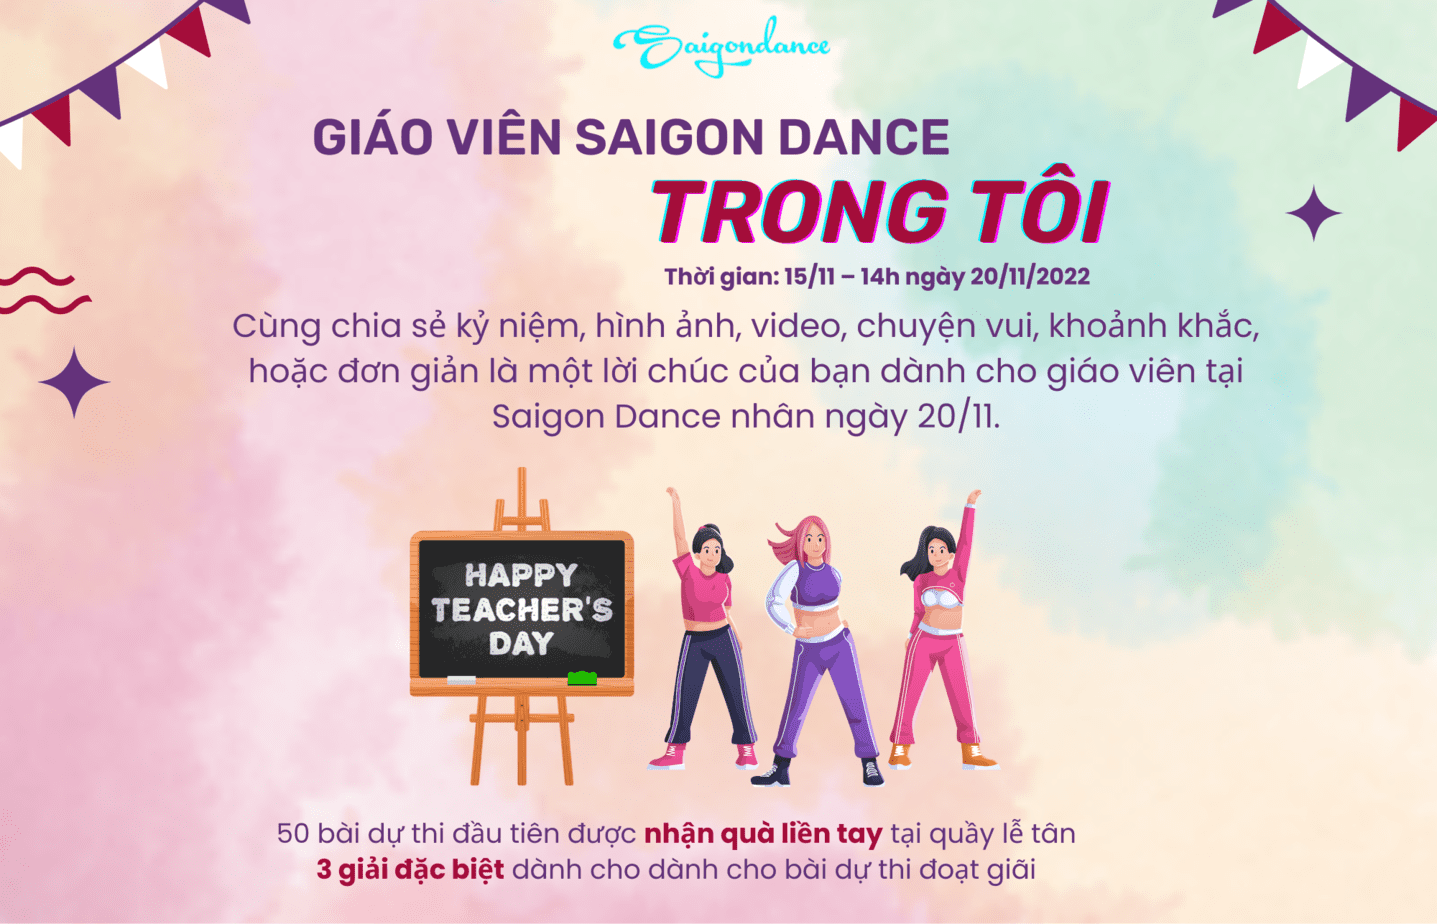 Nhận quà liền tay cùng Cuộc thi "Giáo viên Saigon Dance trong tôi" 21